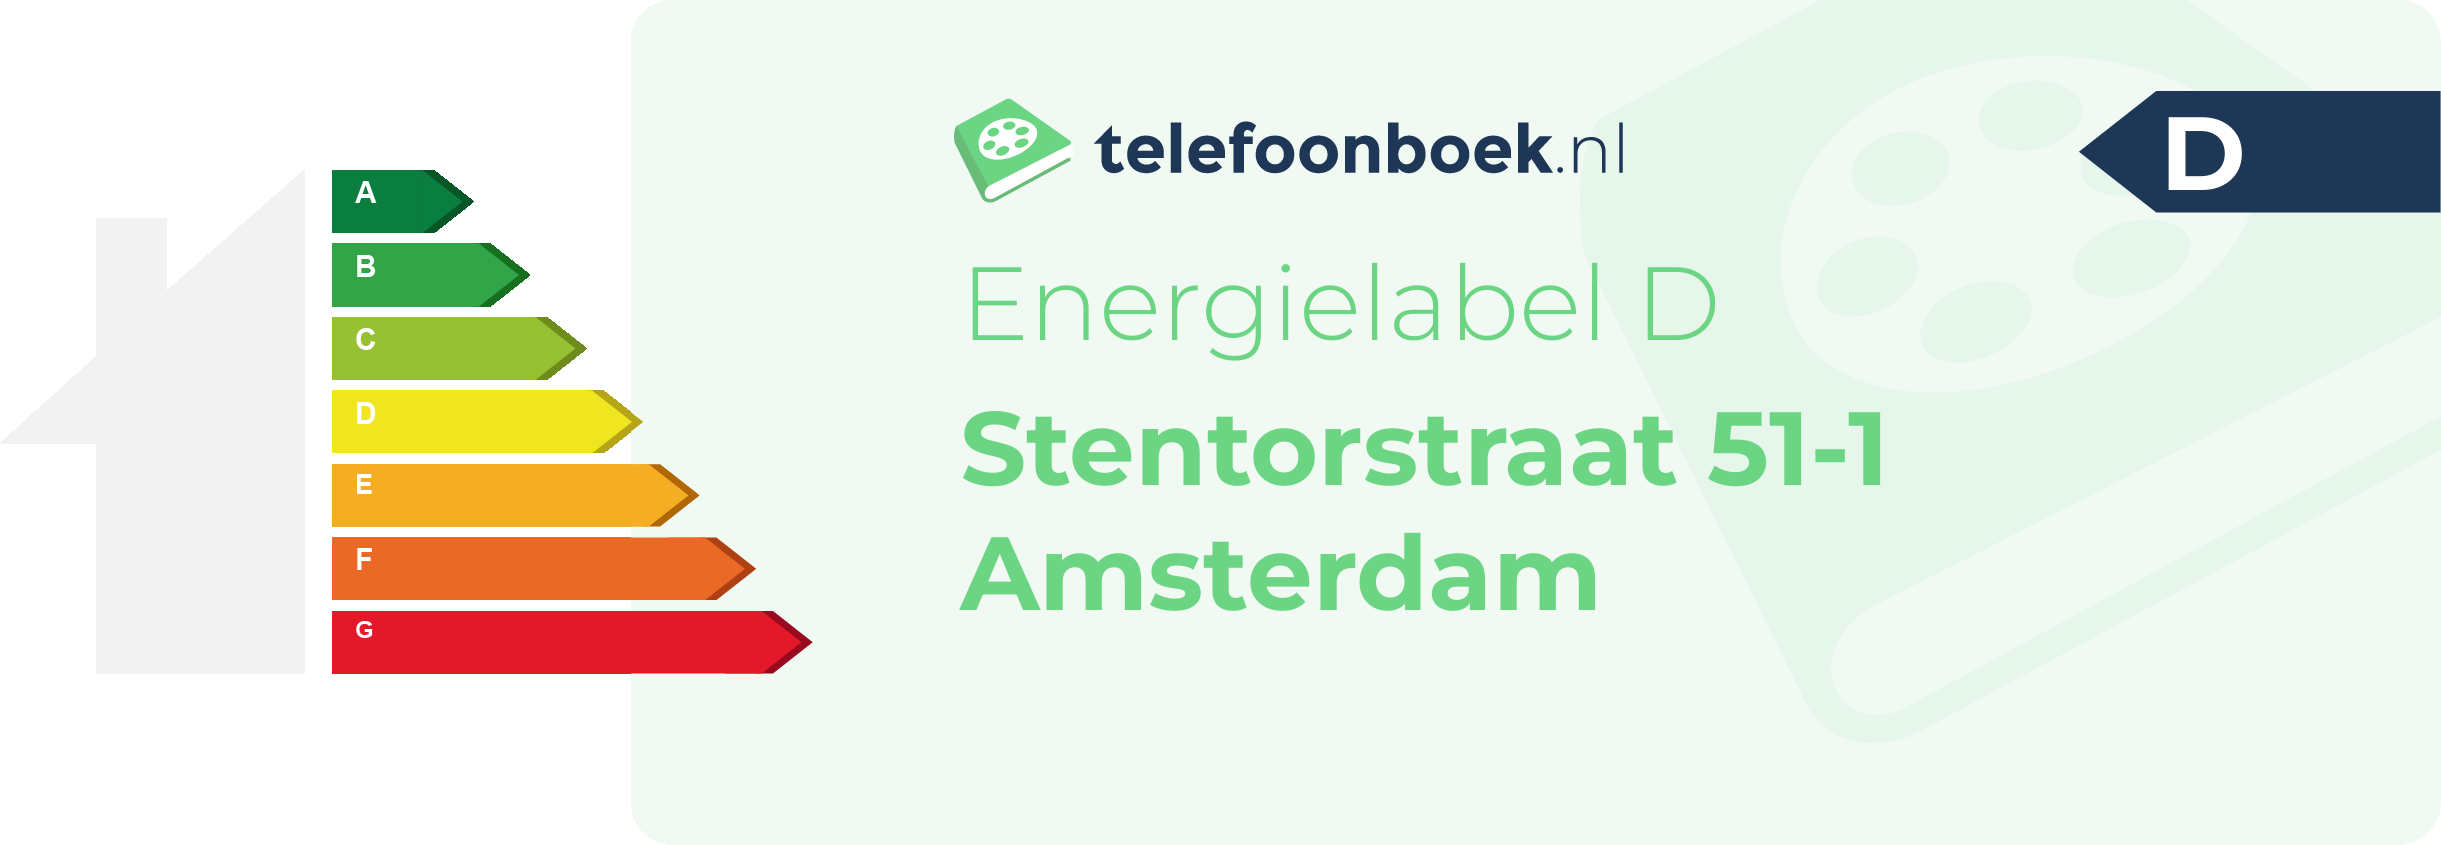 Energielabel Stentorstraat 51-1 Amsterdam